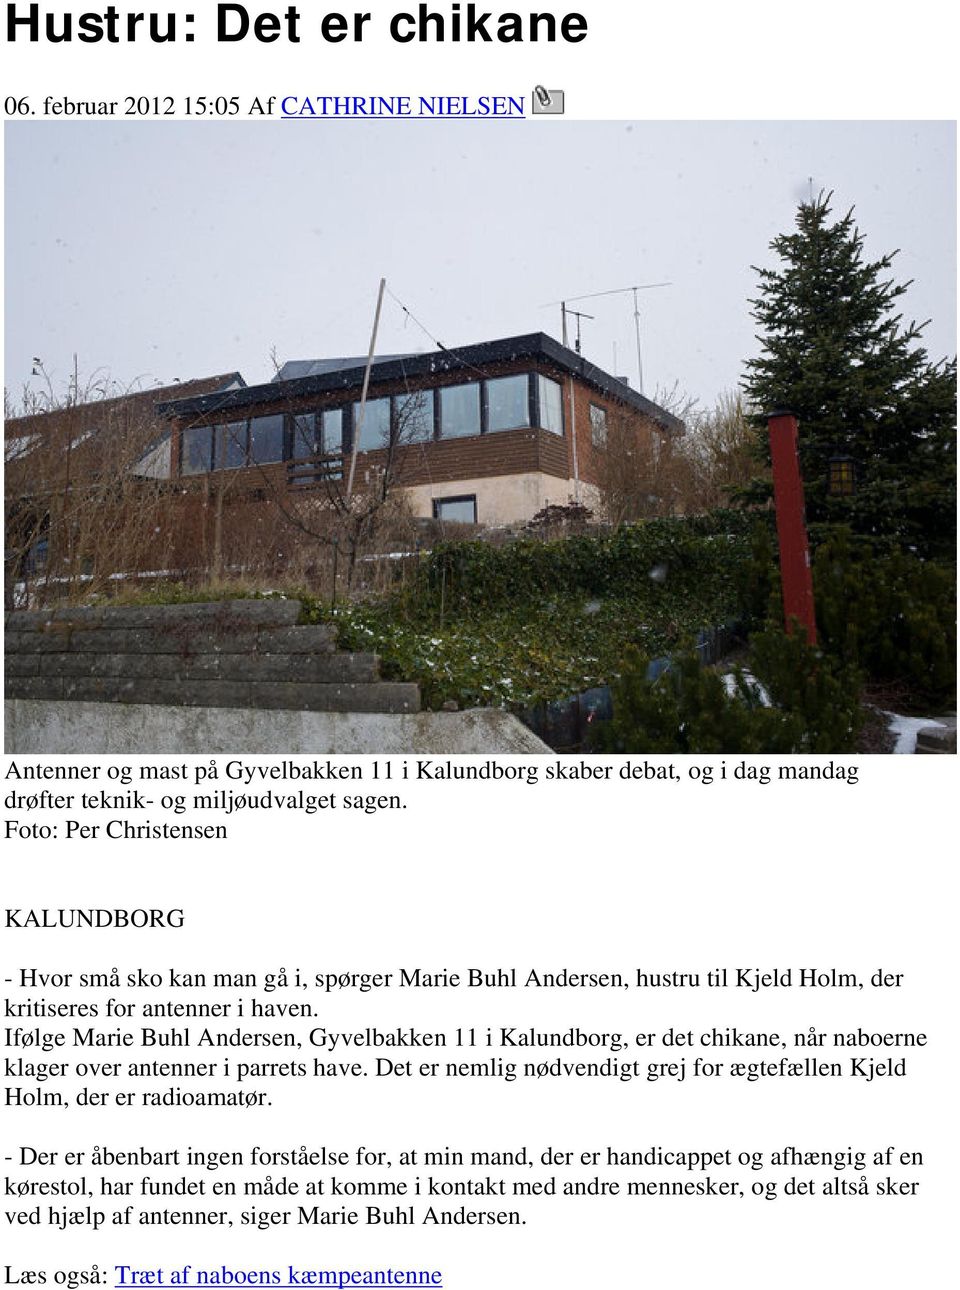 Ifølge Marie Buhl Andersen, Gyvelbakken 11 i Kalundborg, er det chikane, når naboerne klager over antenner i parrets have. Det er nemlig nødvendigt grej for ægtefællen Kjeld Holm, der er radioamatør.